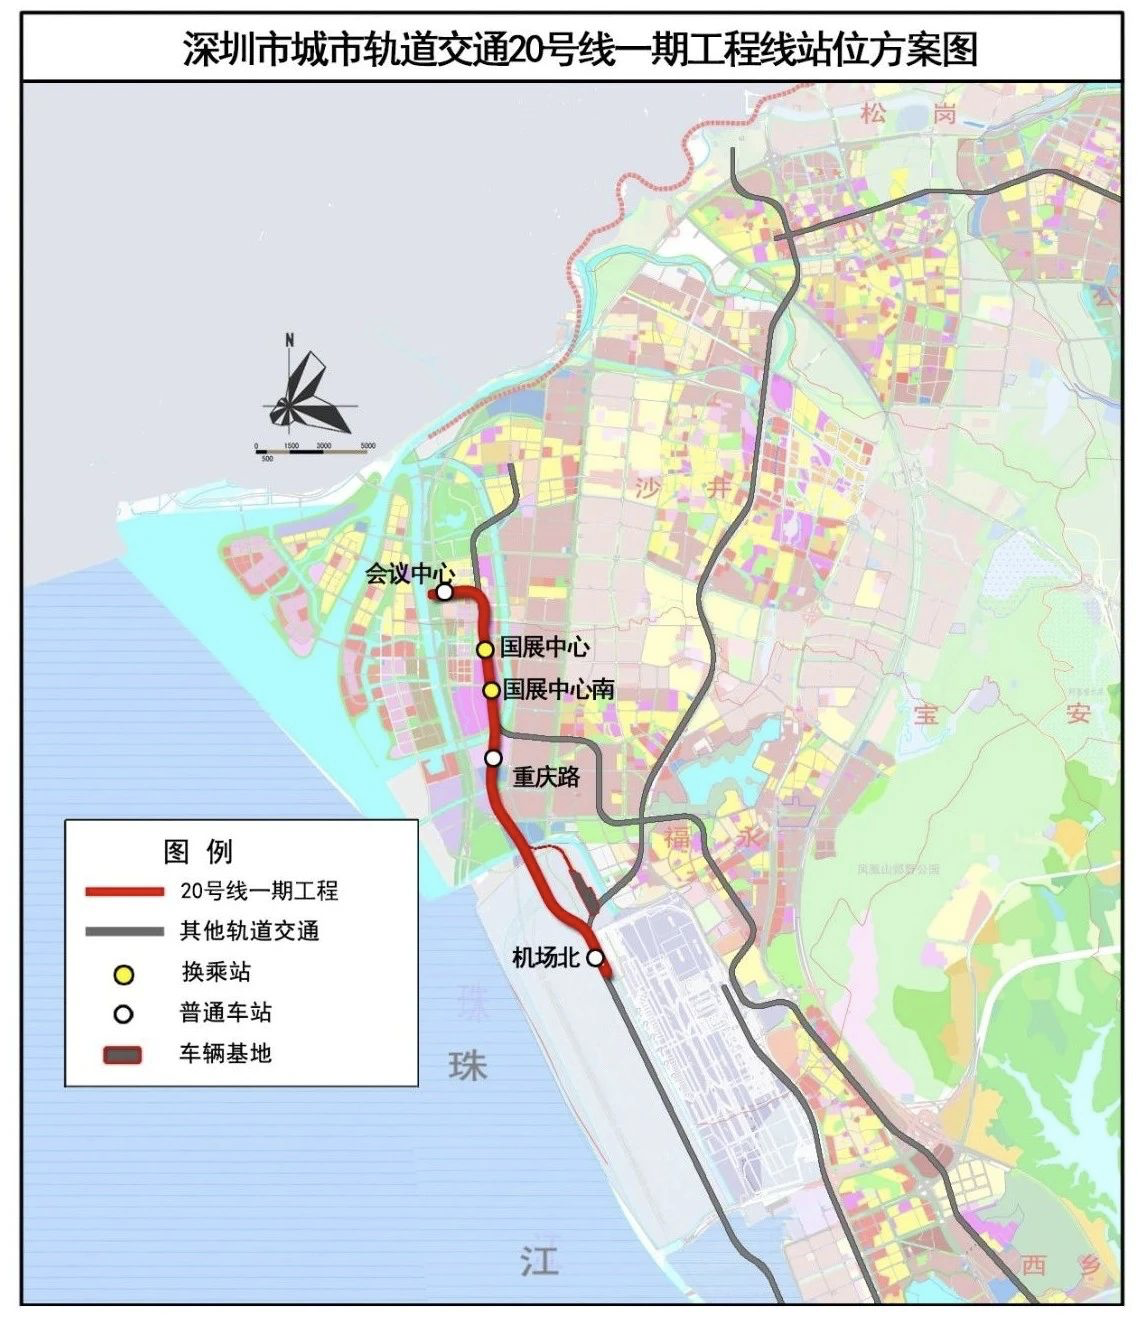 深圳地铁20号线年底建成通车将成为深圳首条无人驾驶地铁线路